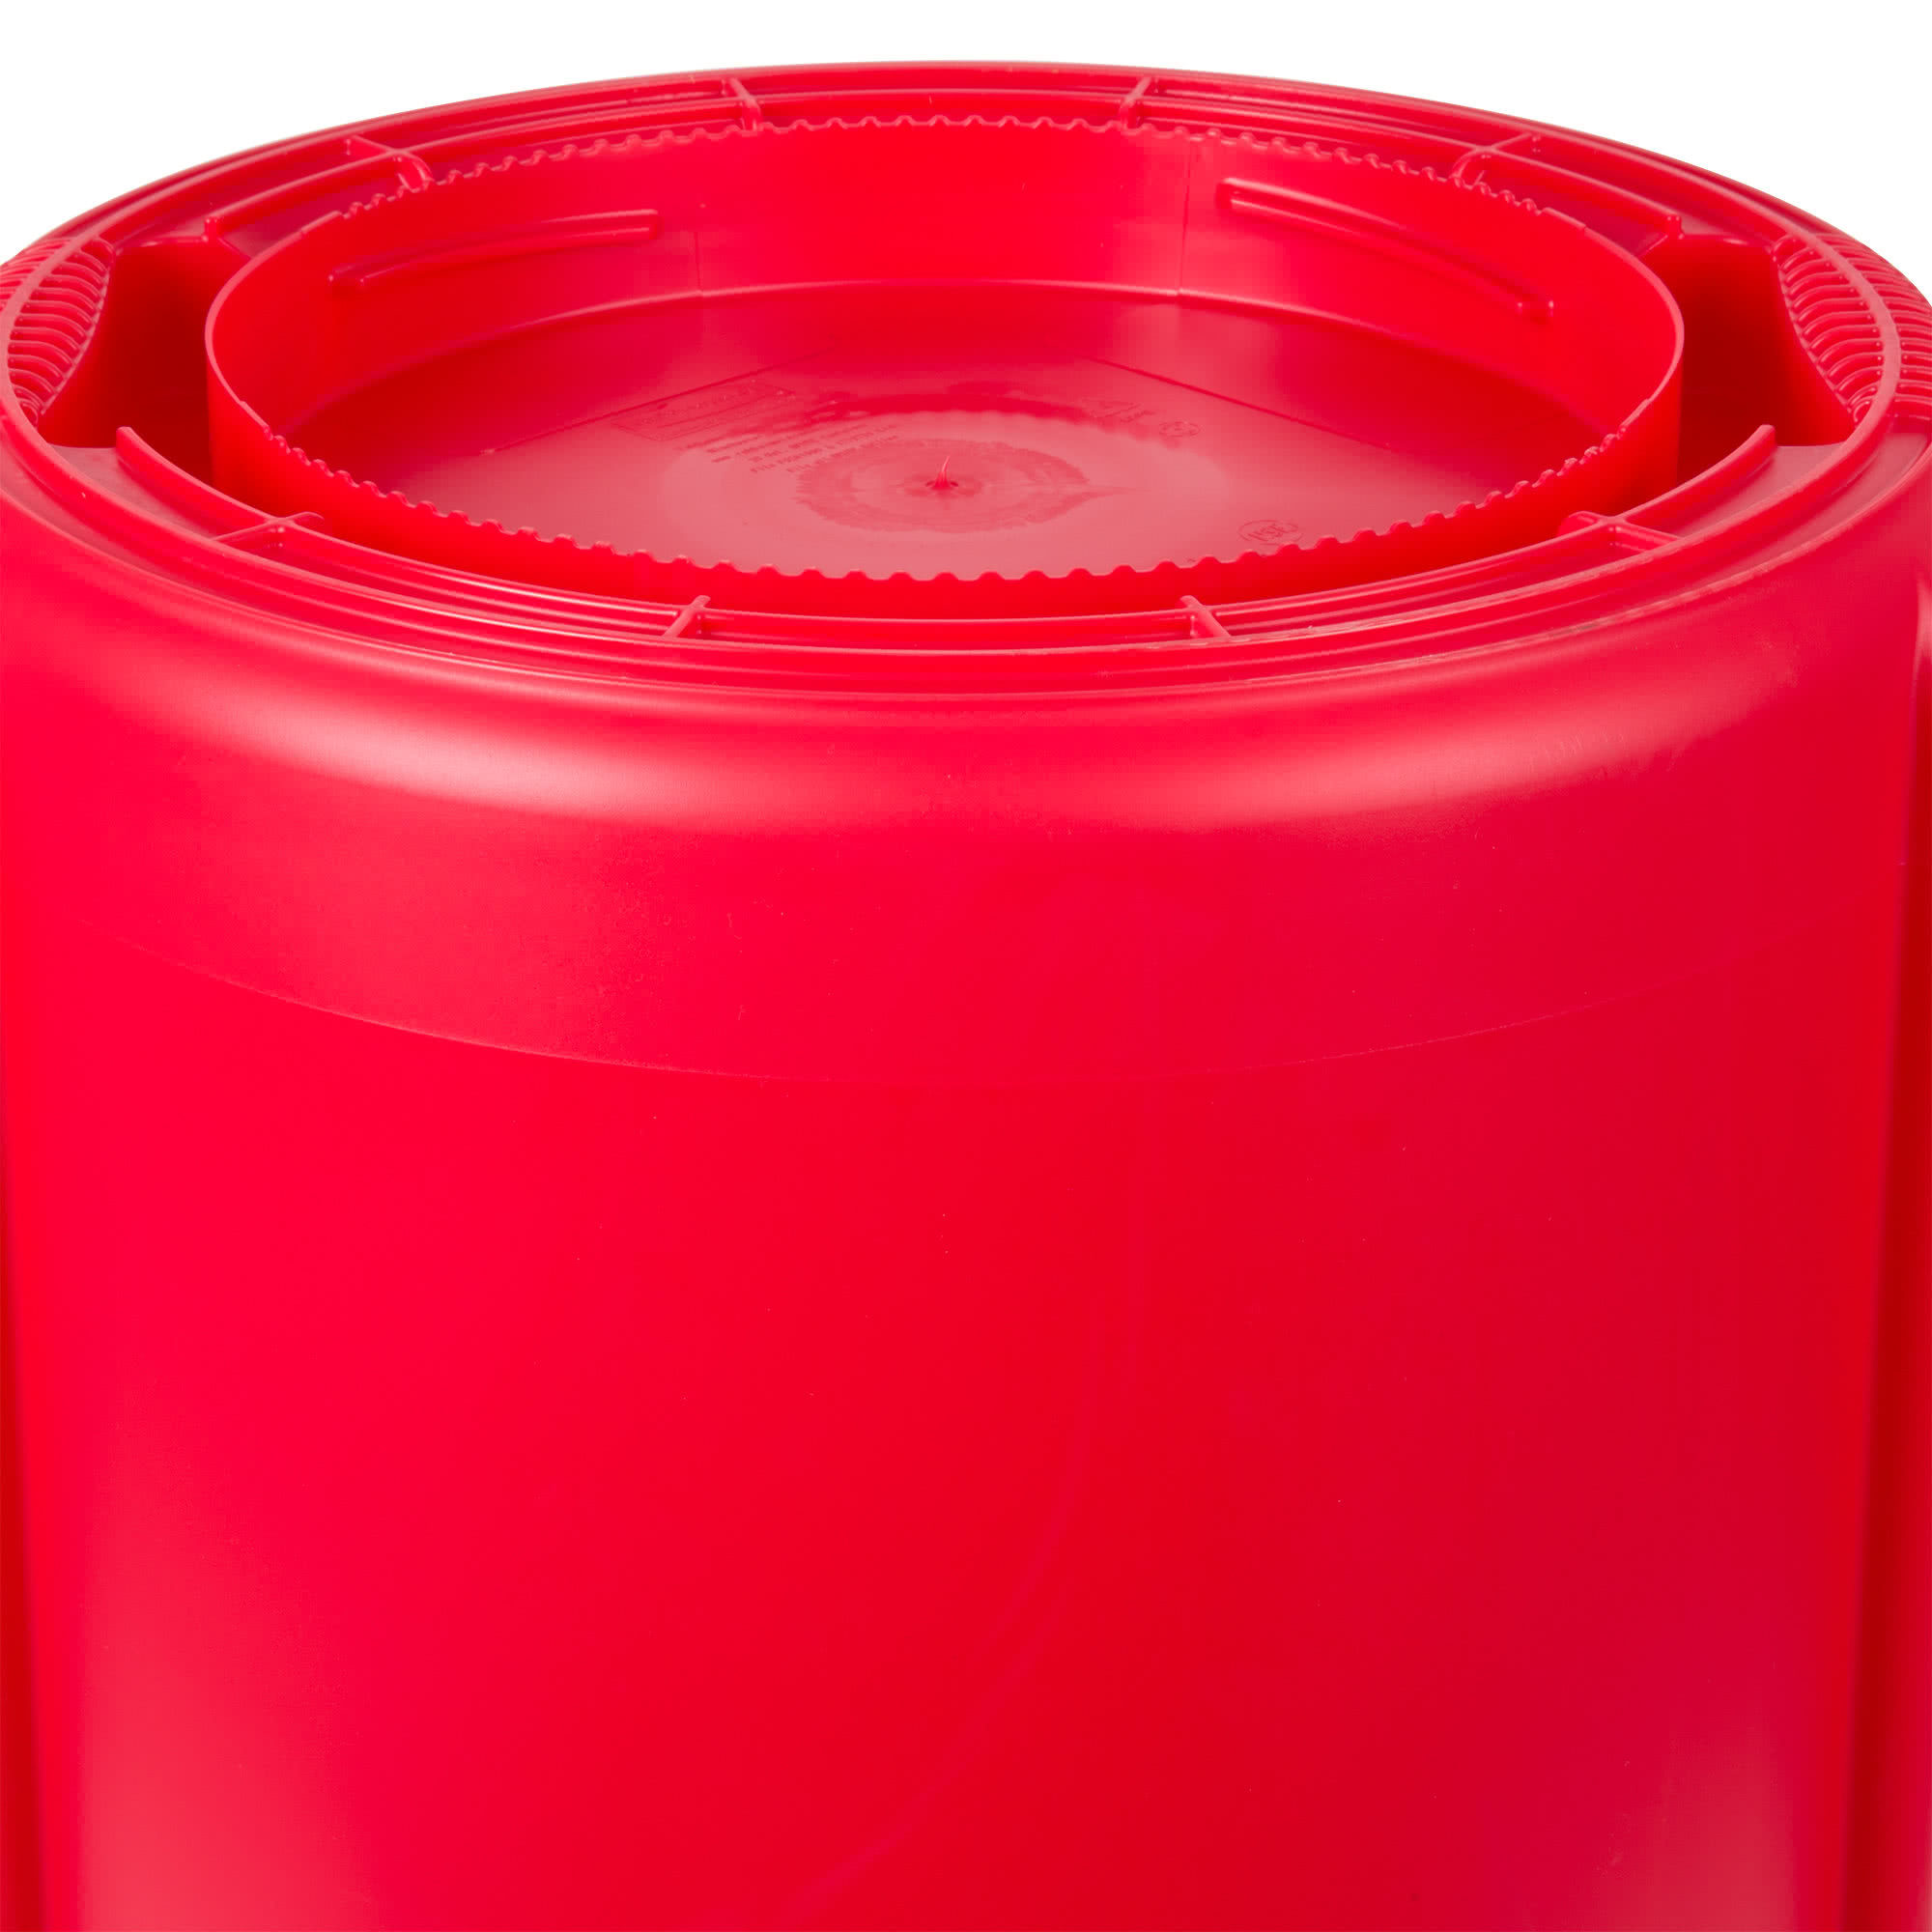 Rubbermaid FG262000RED contenedor Brute color rojo con capacidad para 20 galones